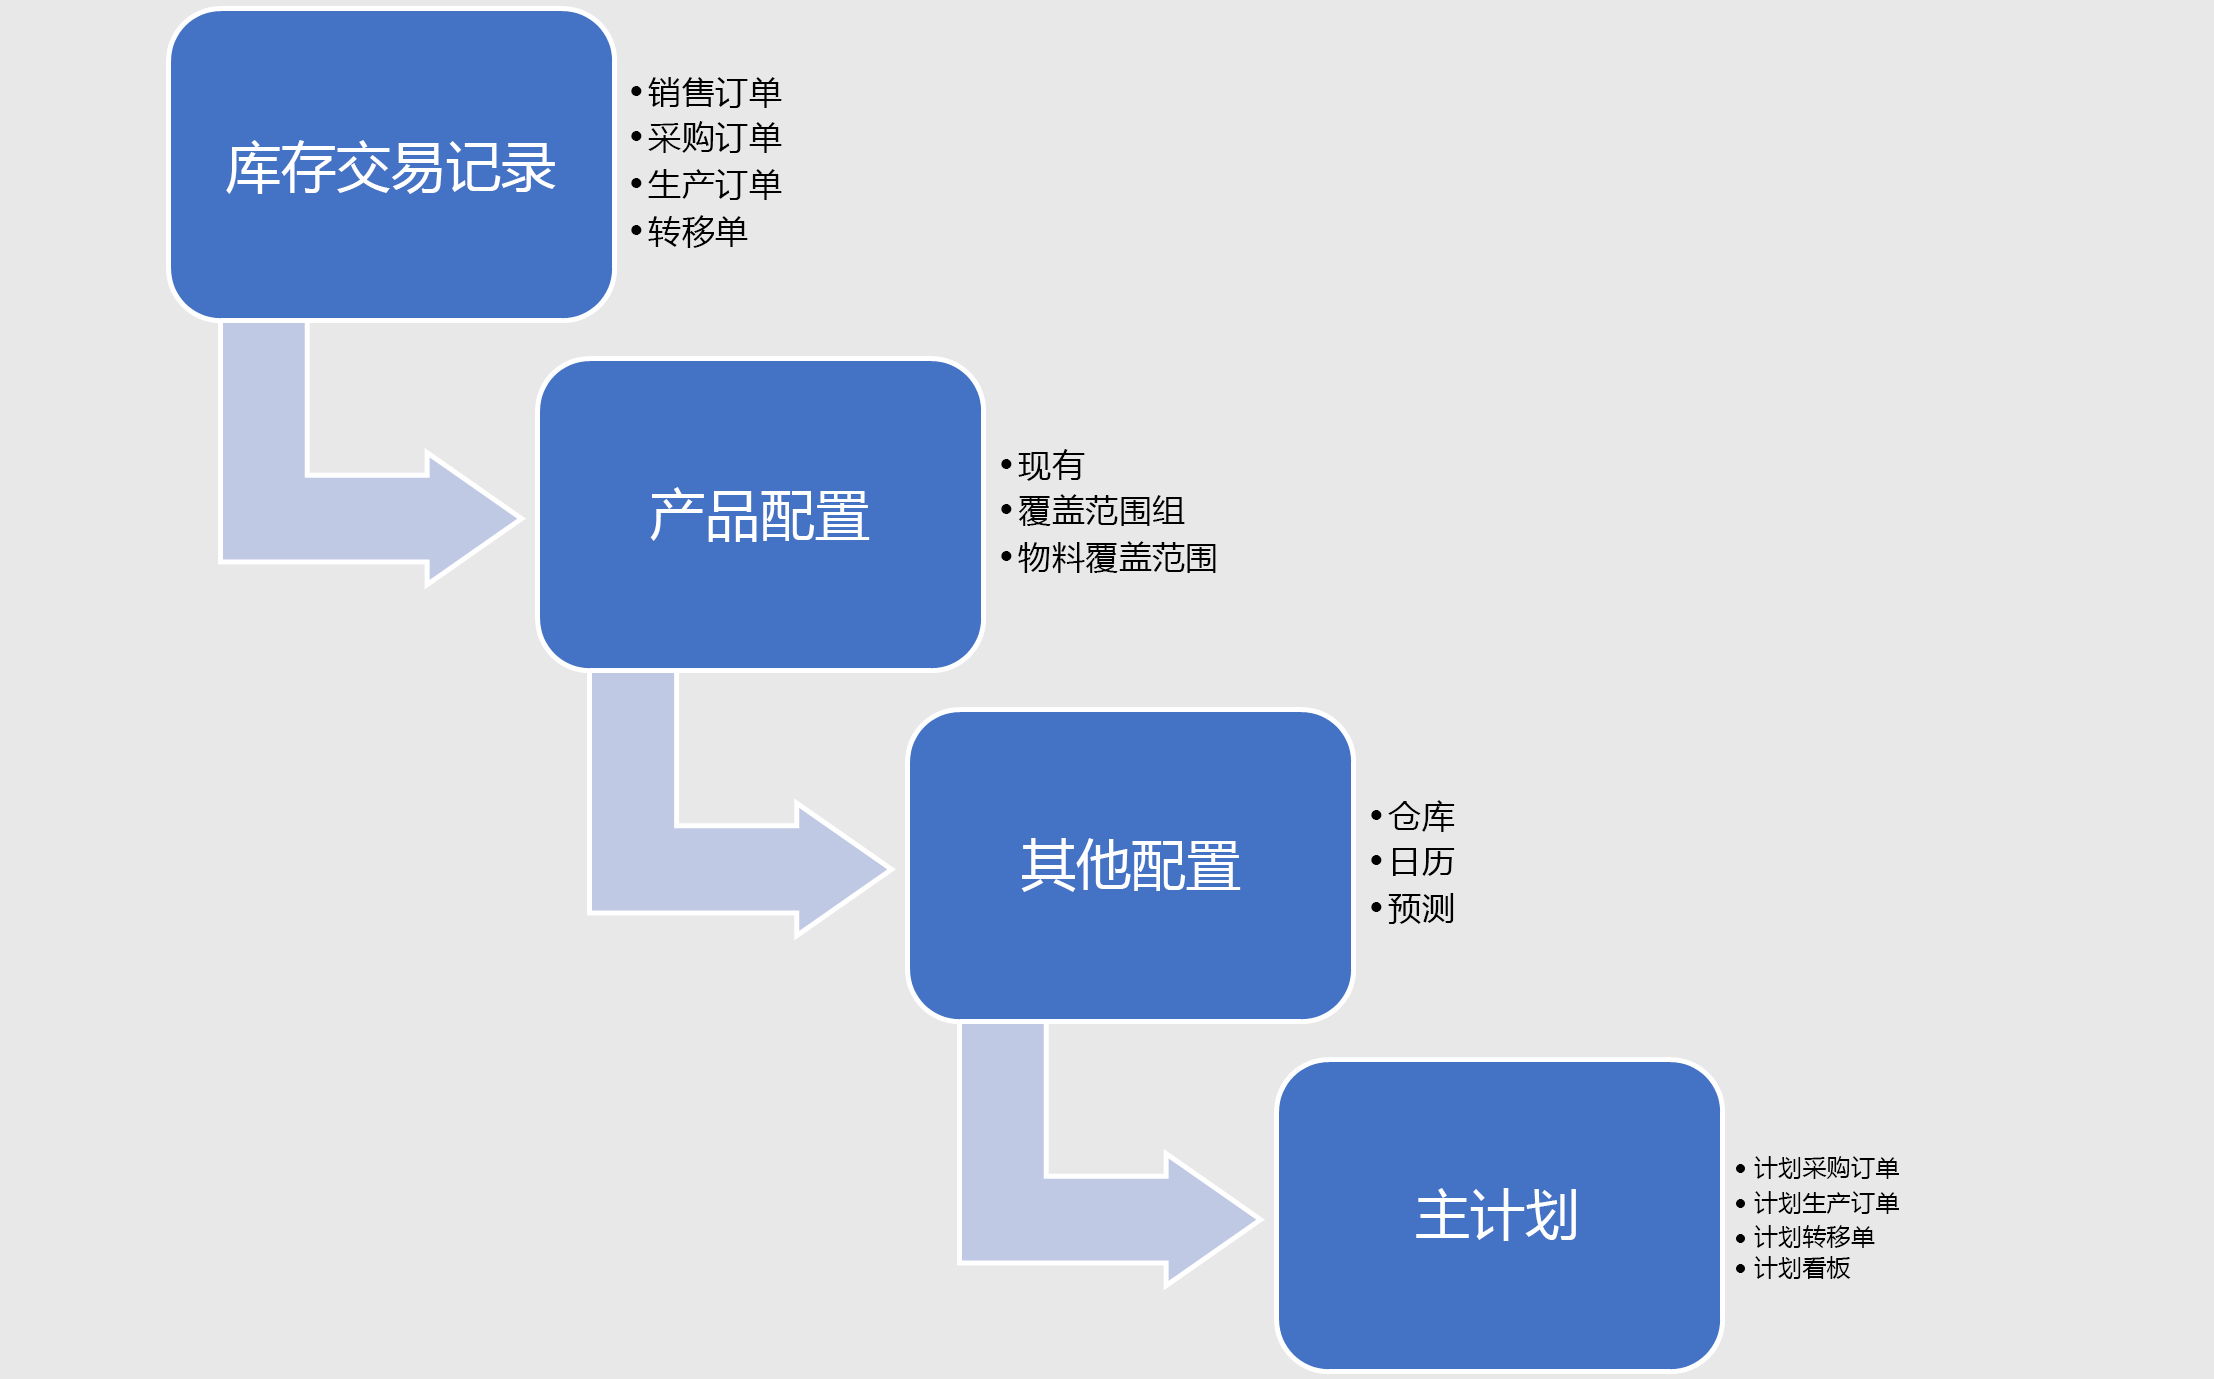 该图显示主计划的输入交易记录和配置以及计划内的输出。